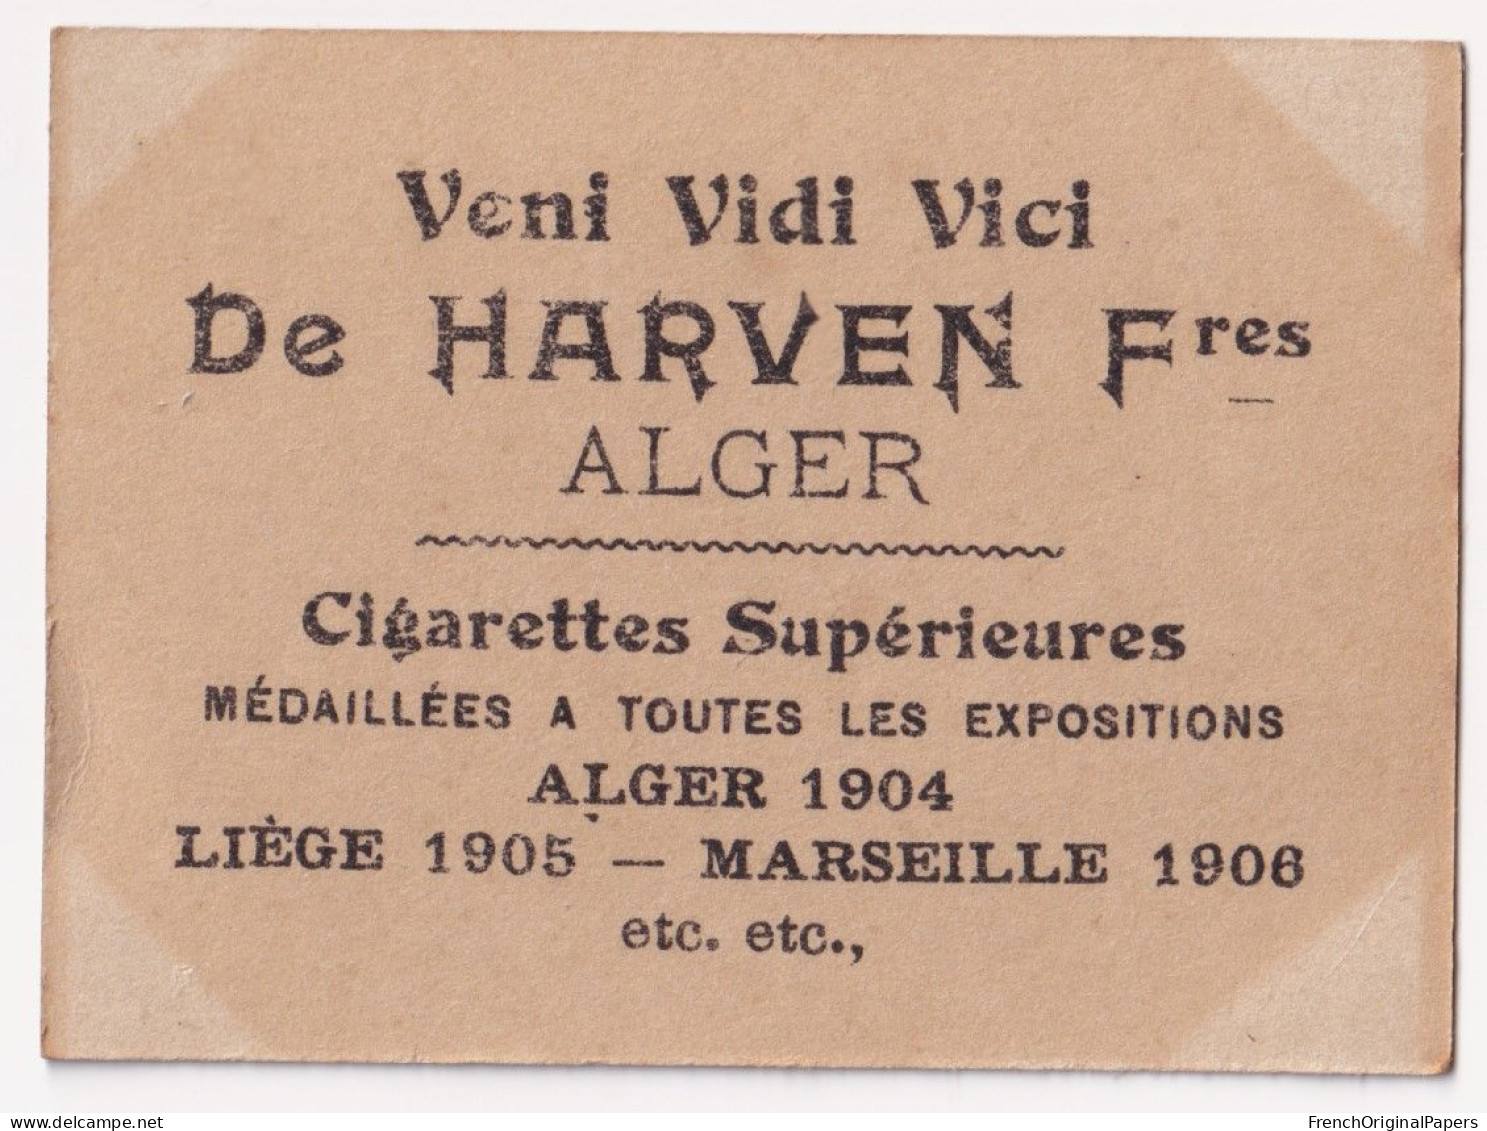 Dréna - Cigarettes De Harven 1910 Photo Femme Sexy Lady Pin-up Woman Nue Nude Nu Seins Nus Vintage Alger épée A62-9 - Zigarettenmarken